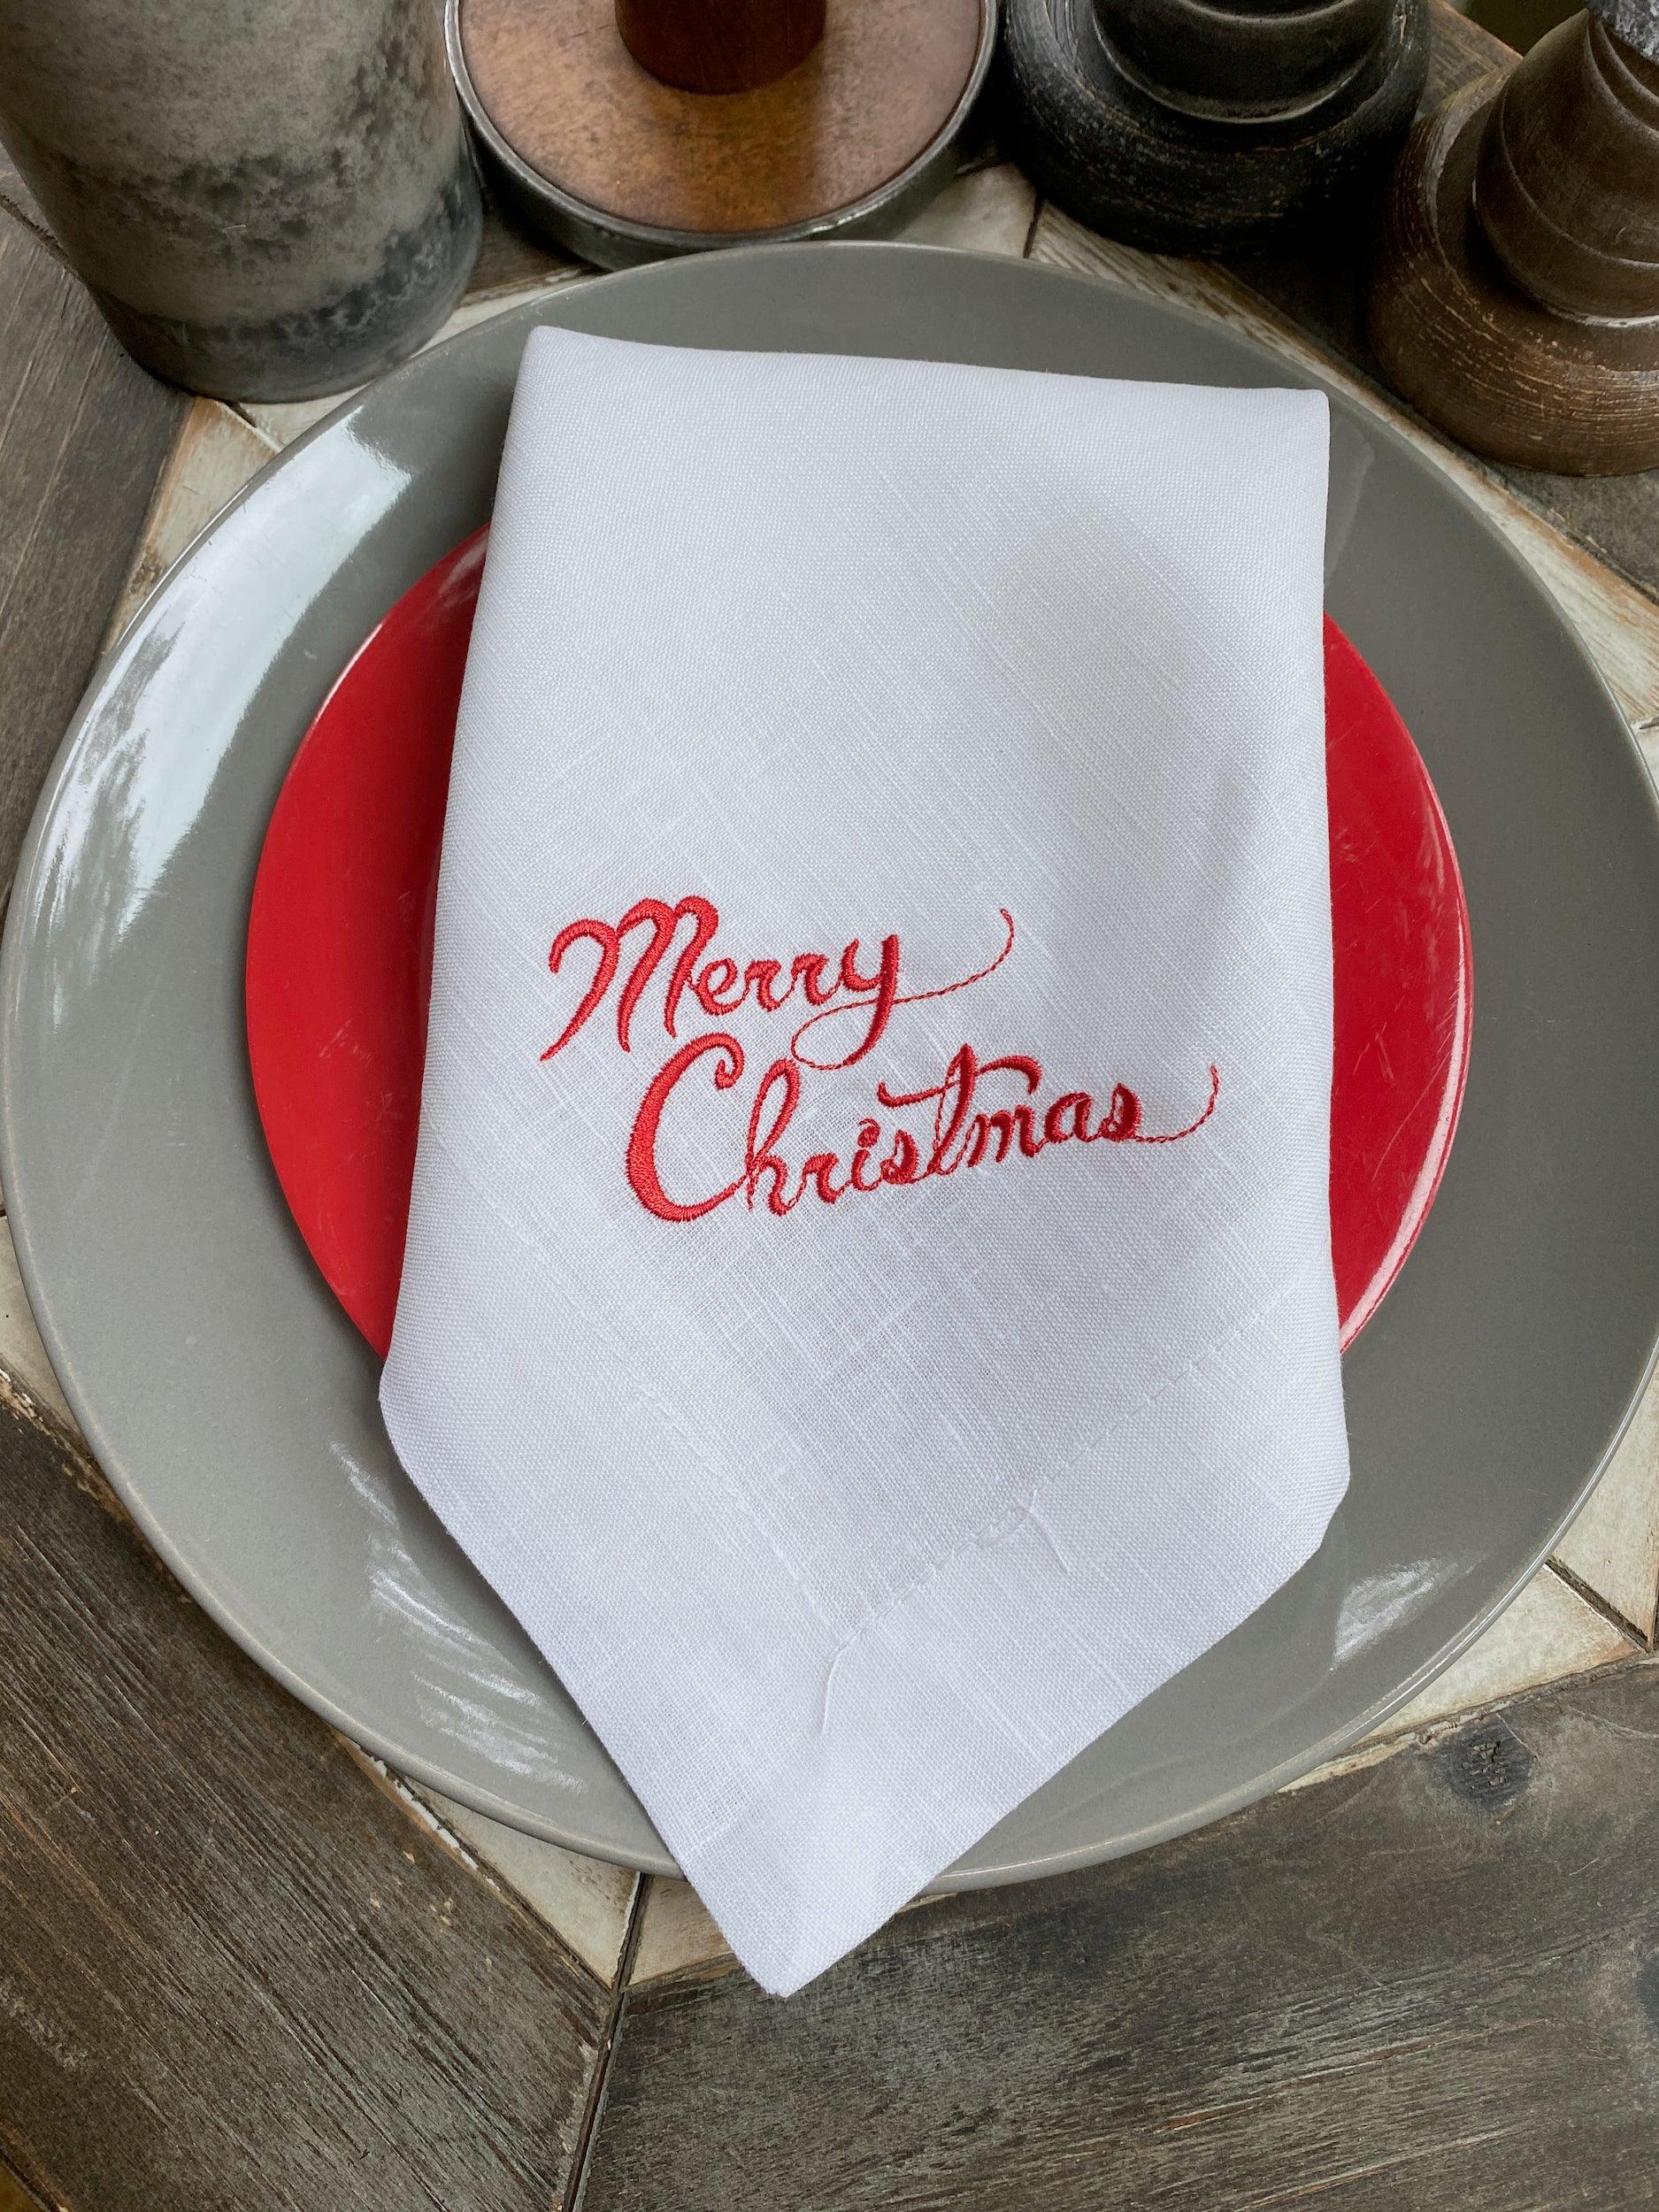 White linen napkins set / Cloth holiday napkins bulk / Custo